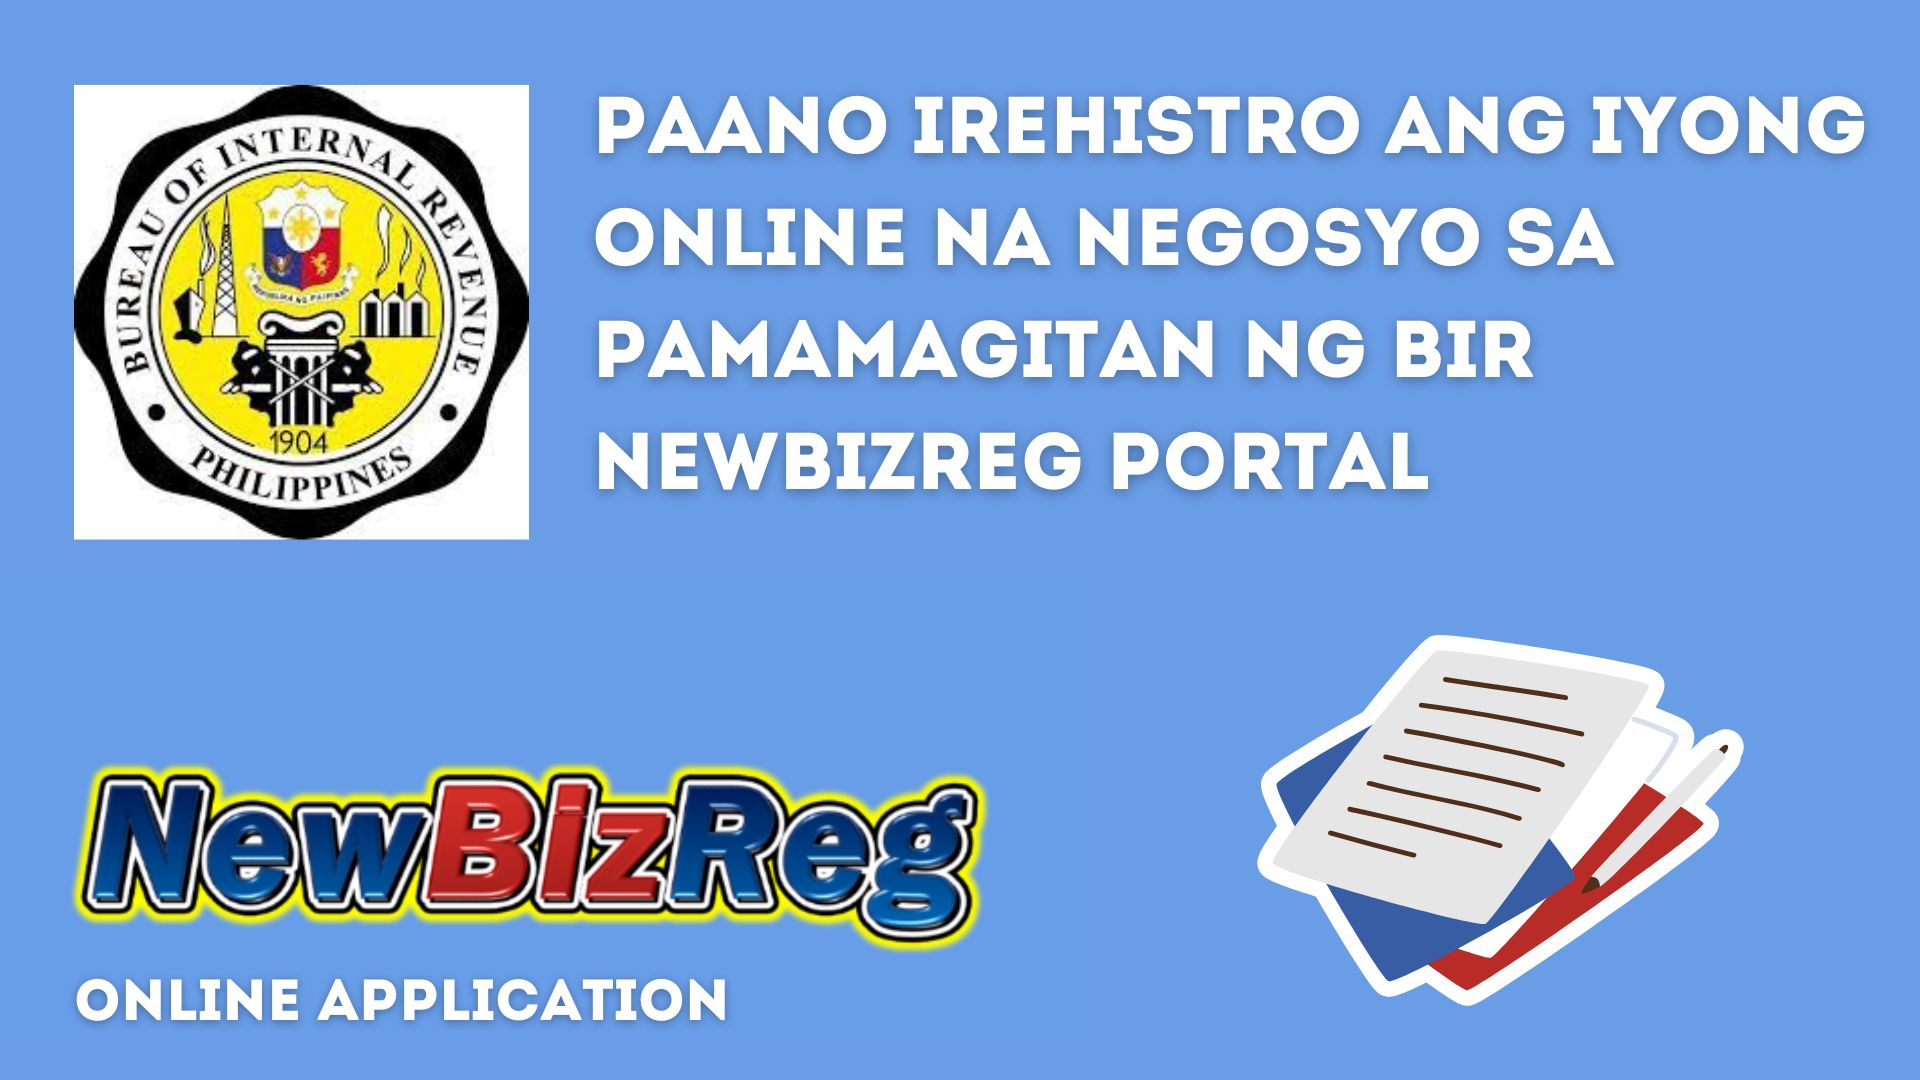 How to register a business through NewBizReg Portal